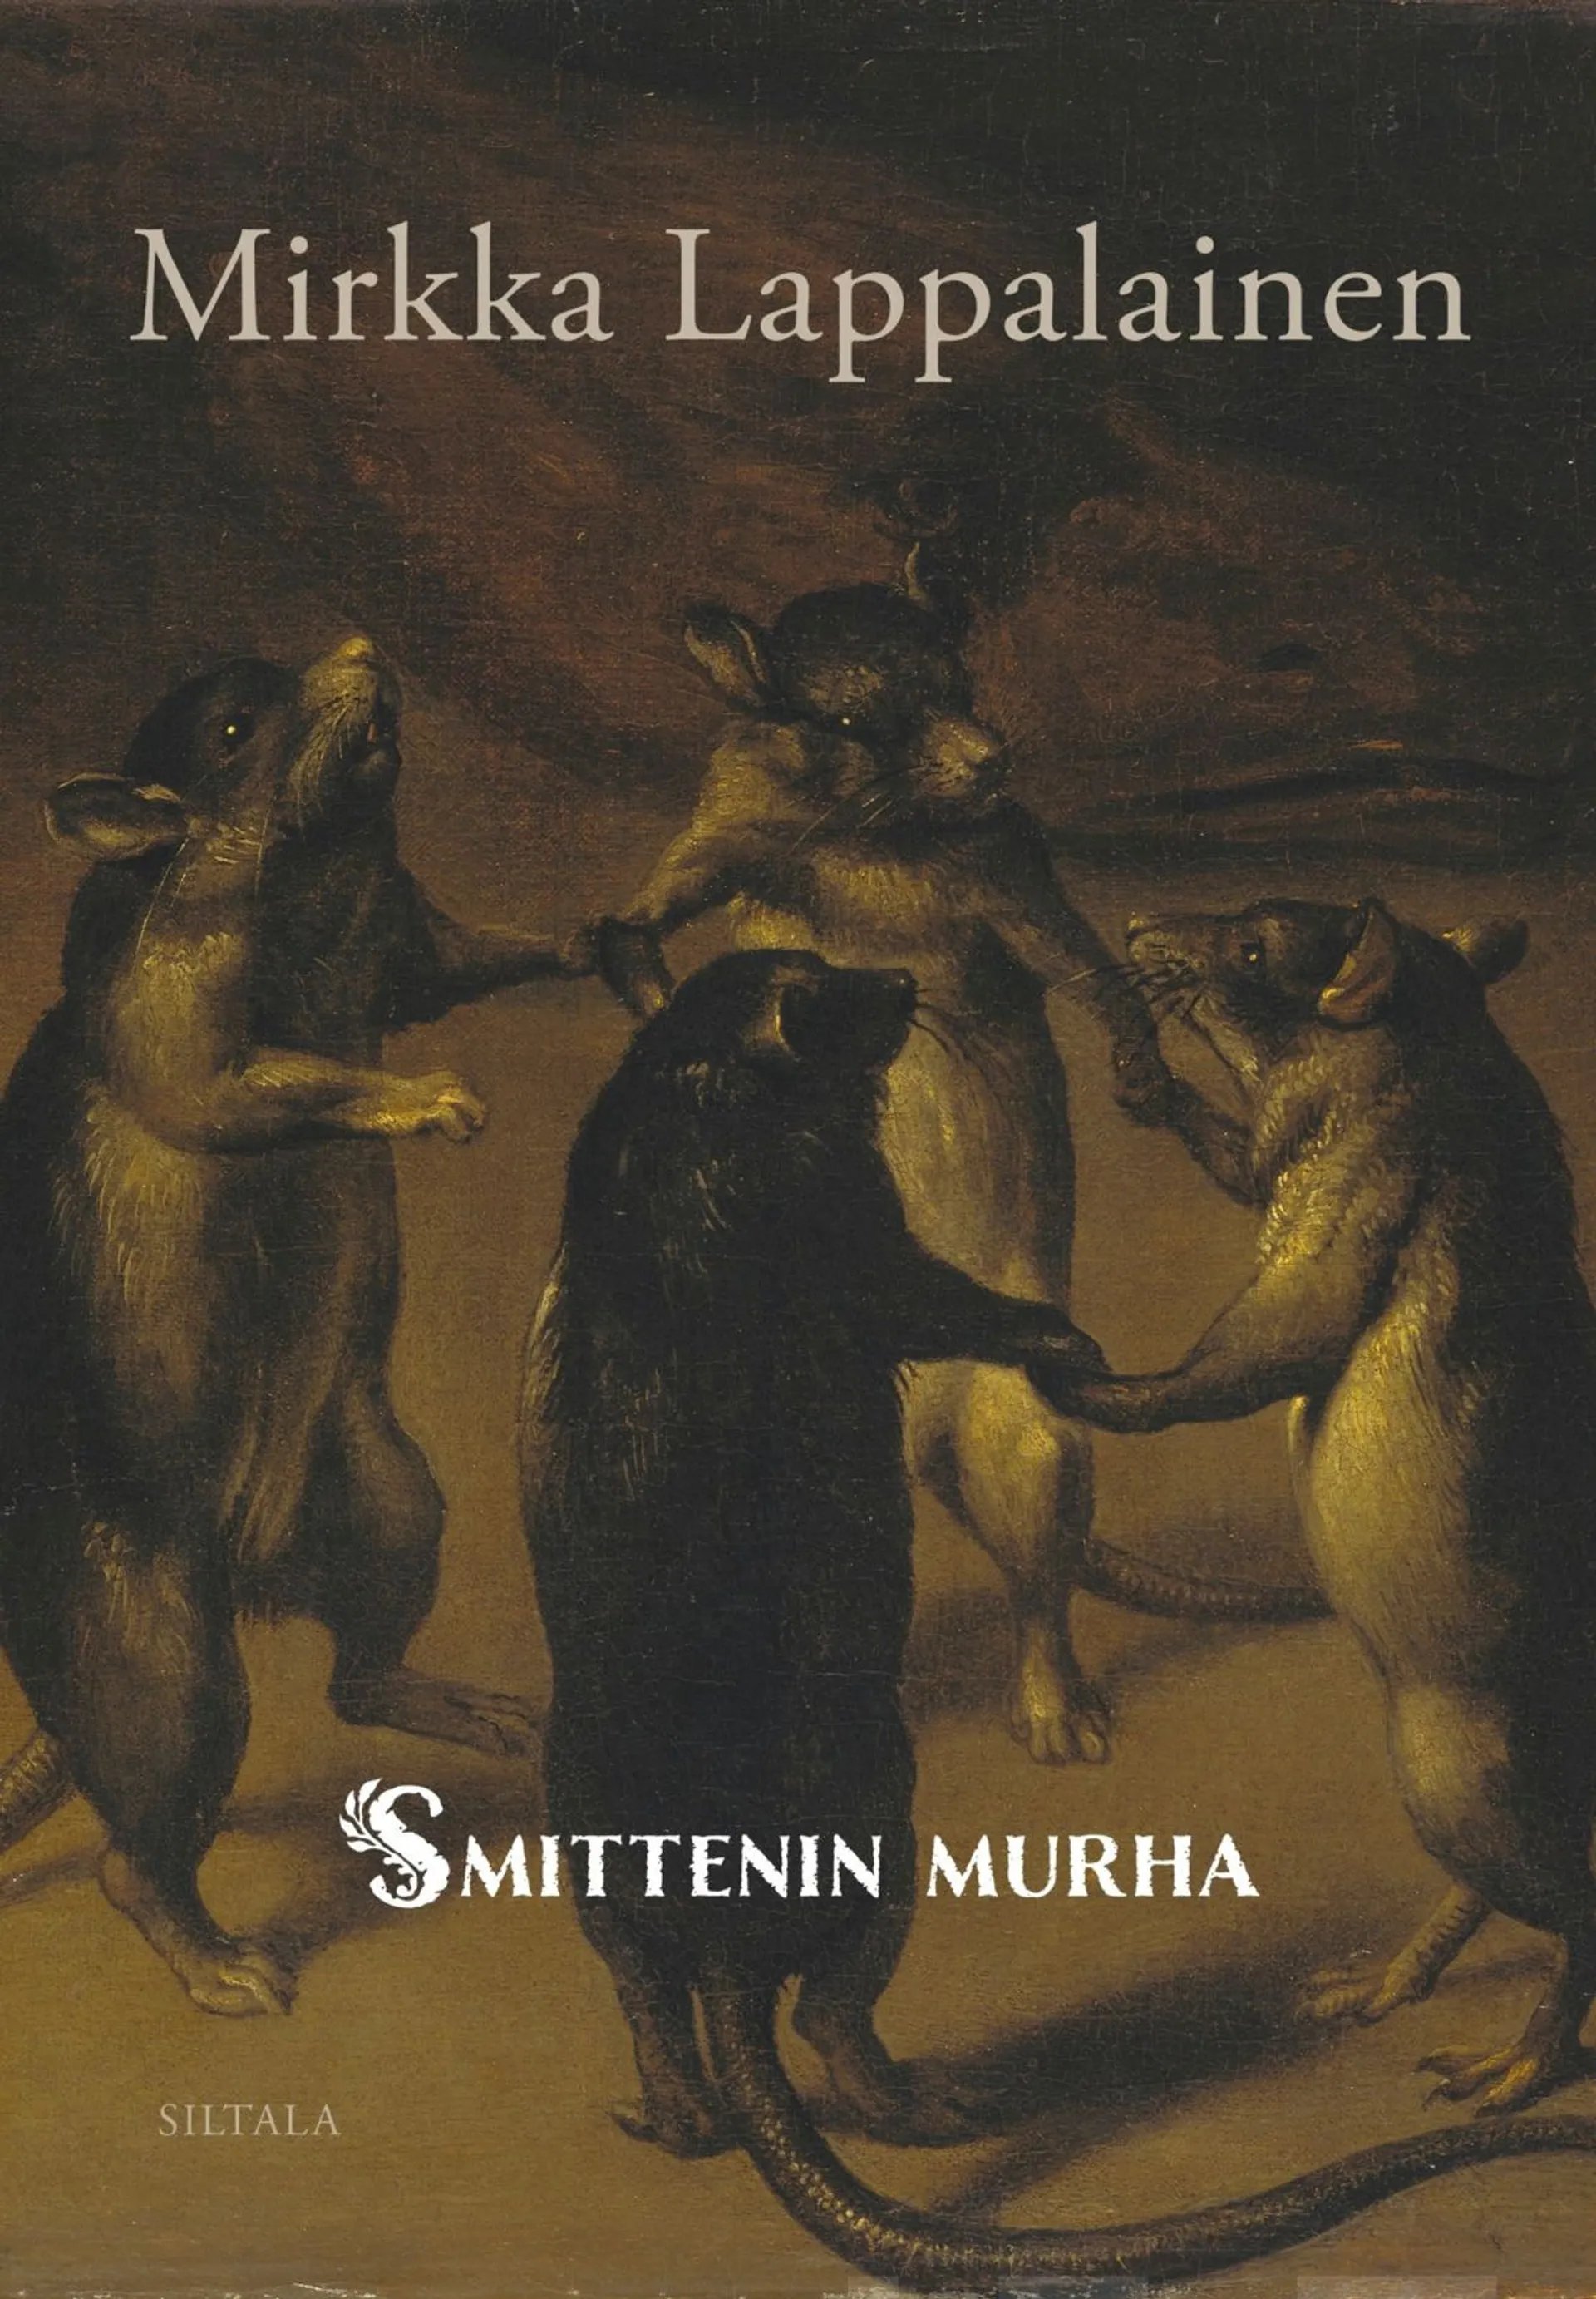 Lappalainen, Smittenin murha - Katoamistapaus 1600-luvulta